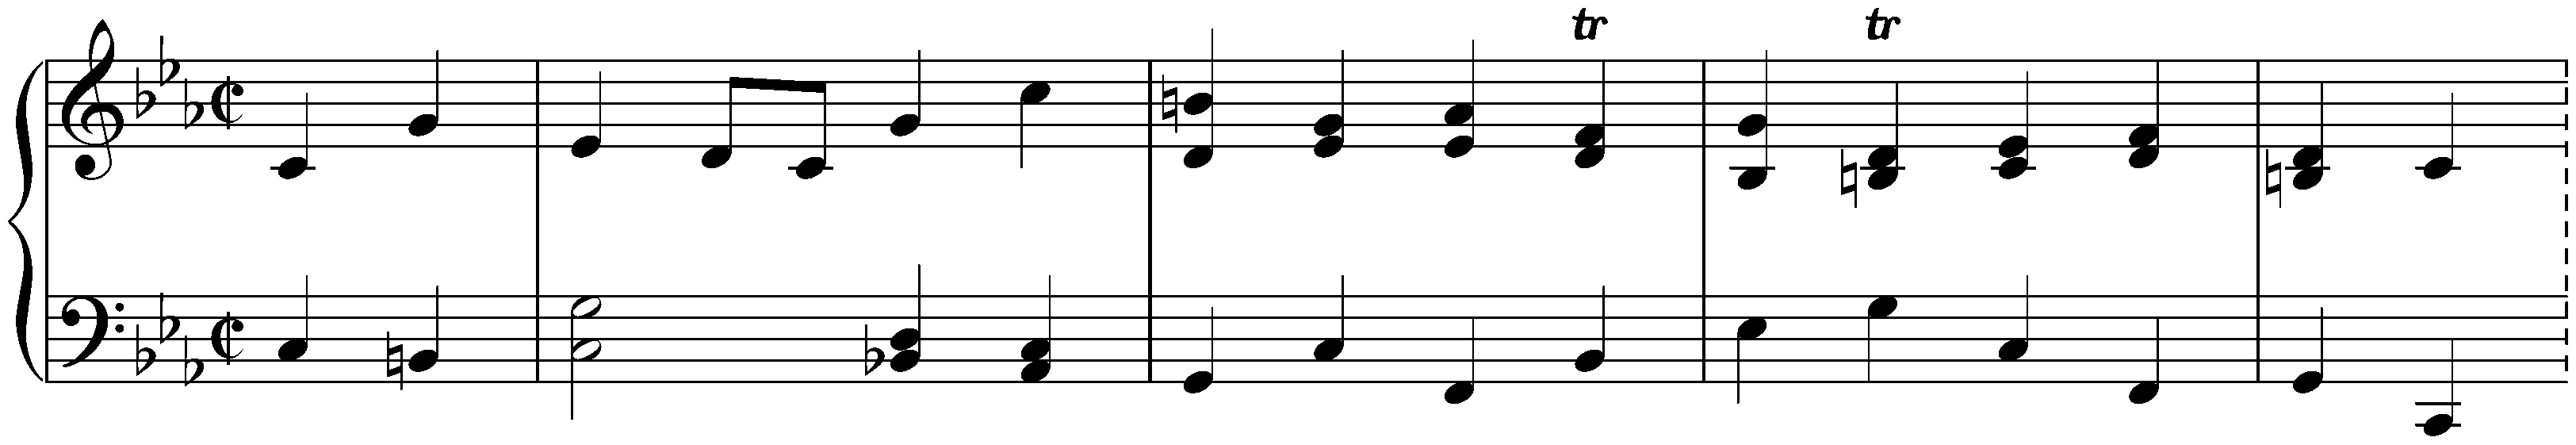 Partita in C minor, HWV 444; 4. Gavotte